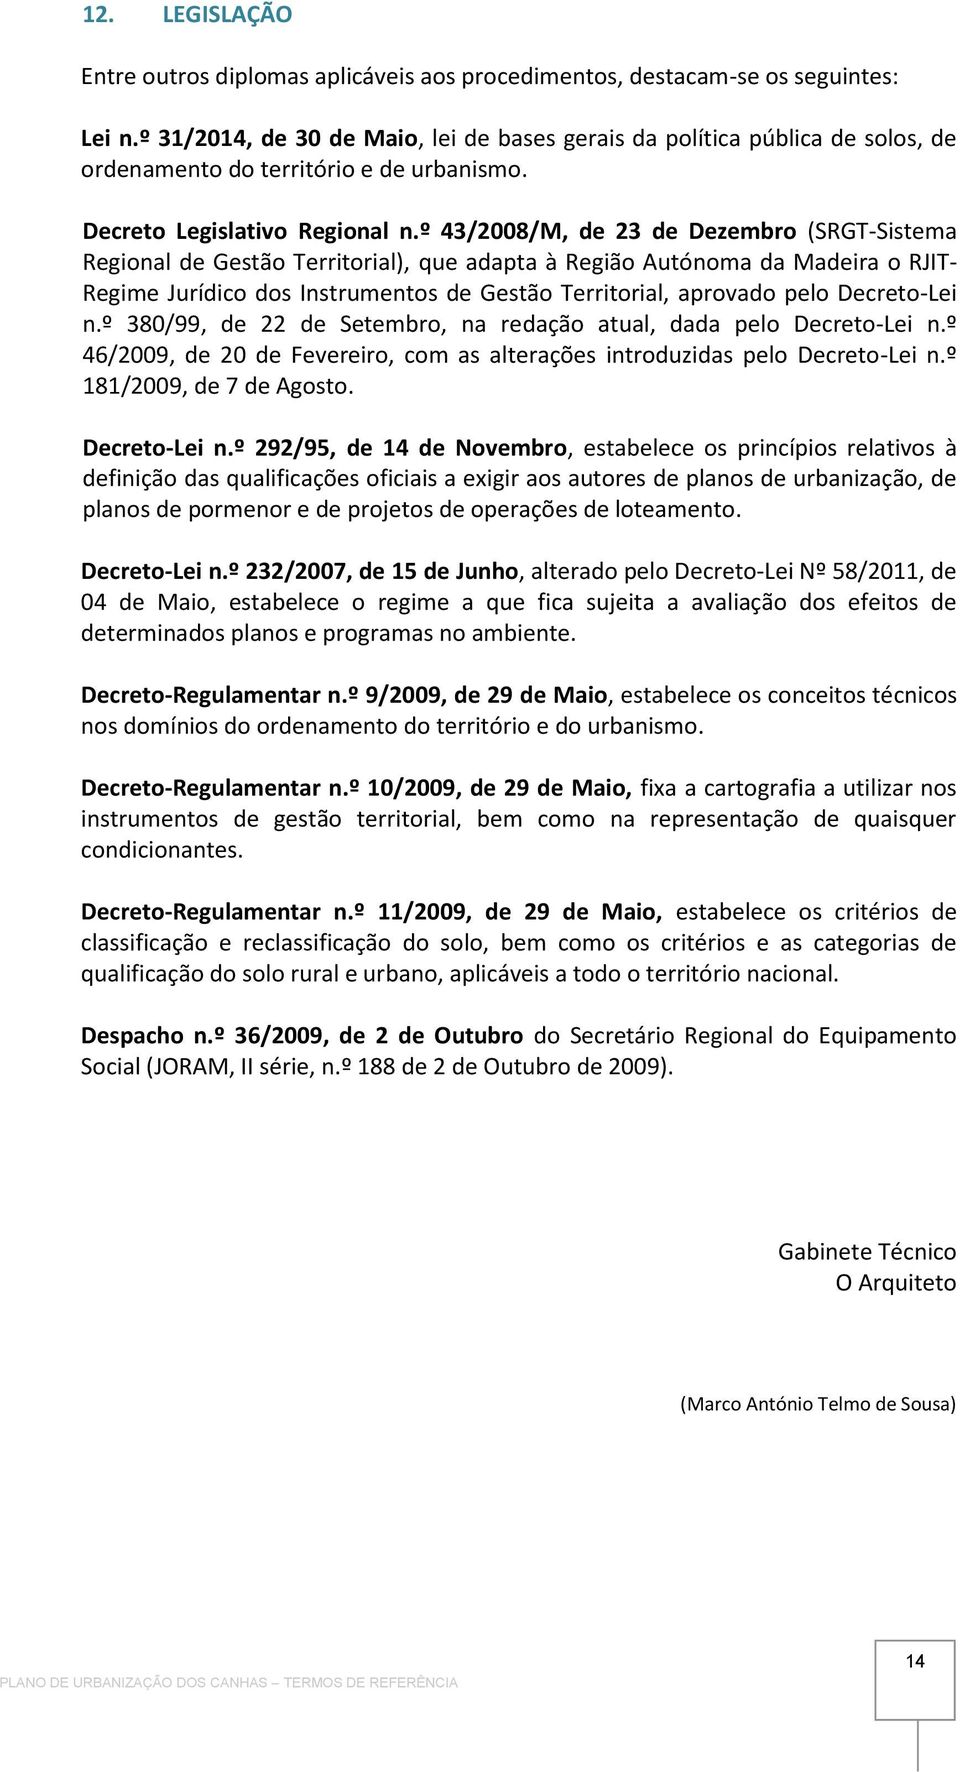 º 43/2008/M, de 23 de Dezembro (SRGT-Sistema Regional de Gestão Territorial), que adapta à Região Autónoma da Madeira o RJIT- Regime Jurídico dos Instrumentos de Gestão Territorial, aprovado pelo